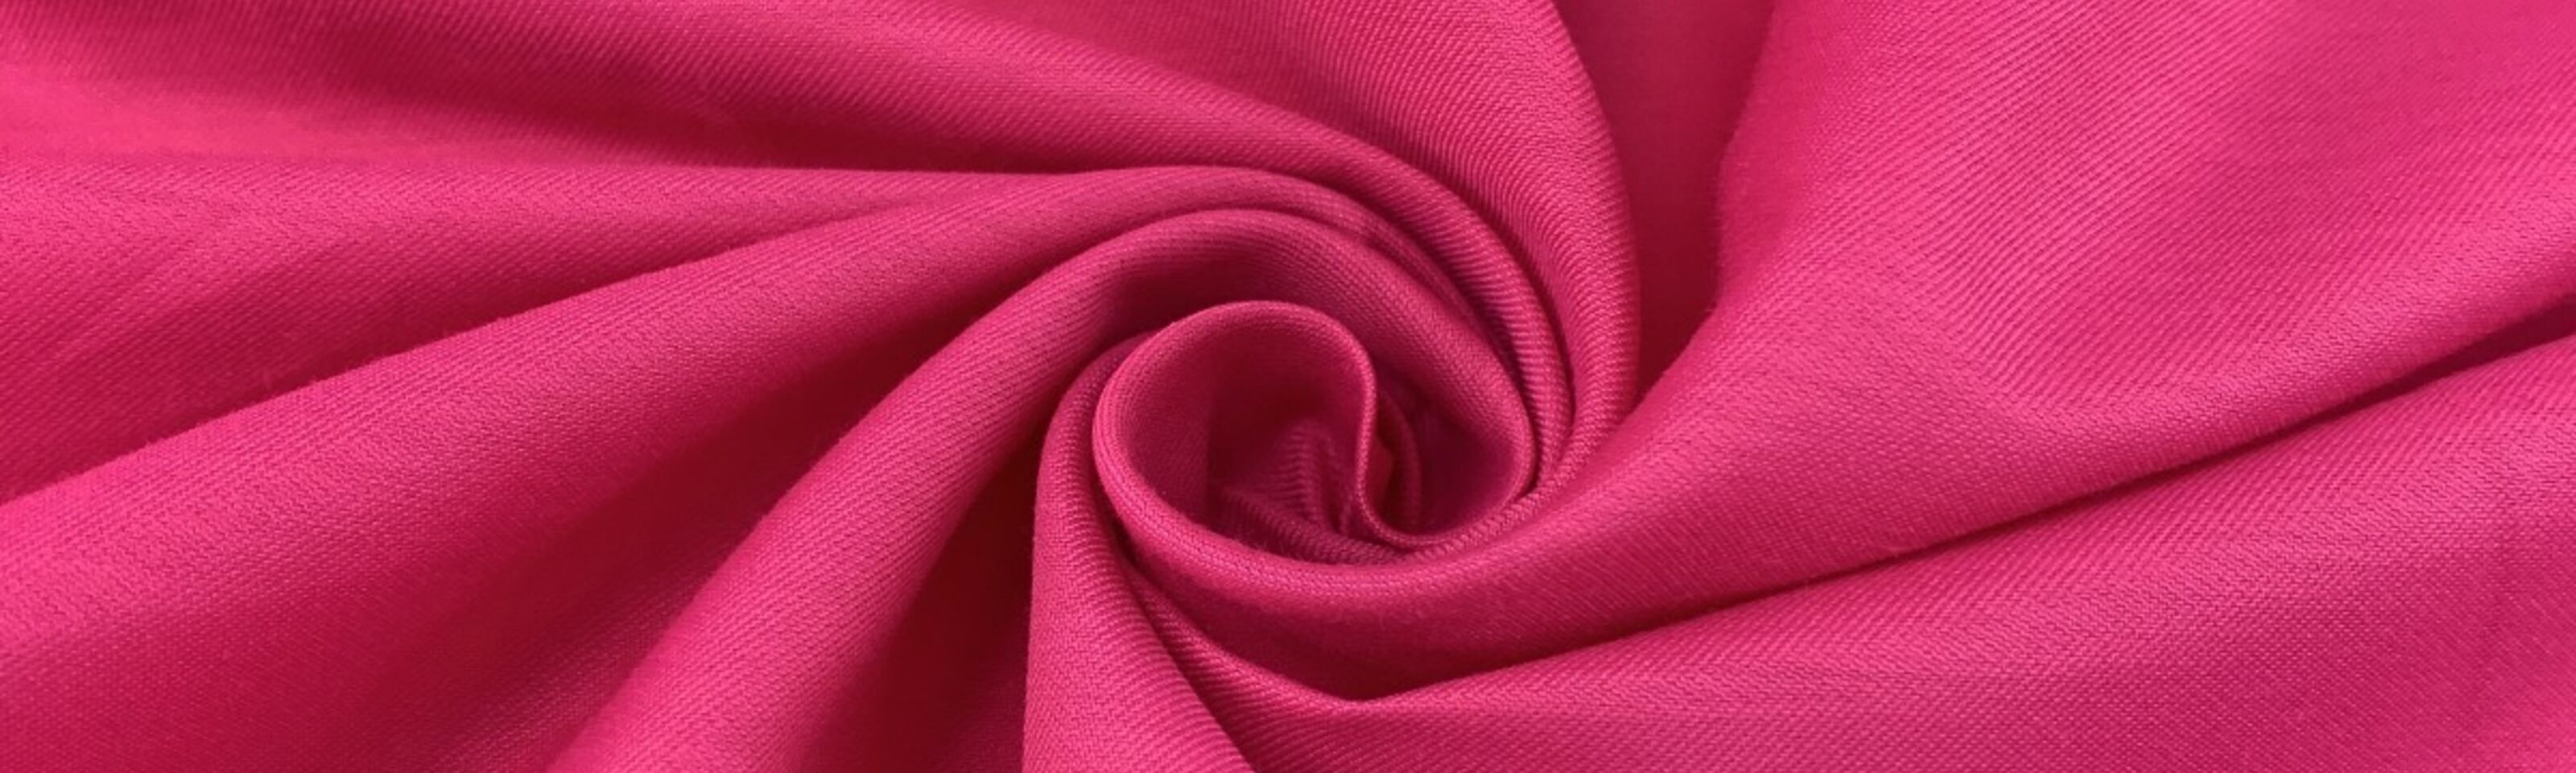 Italian Lawn - Fuchsia Pink - swirl